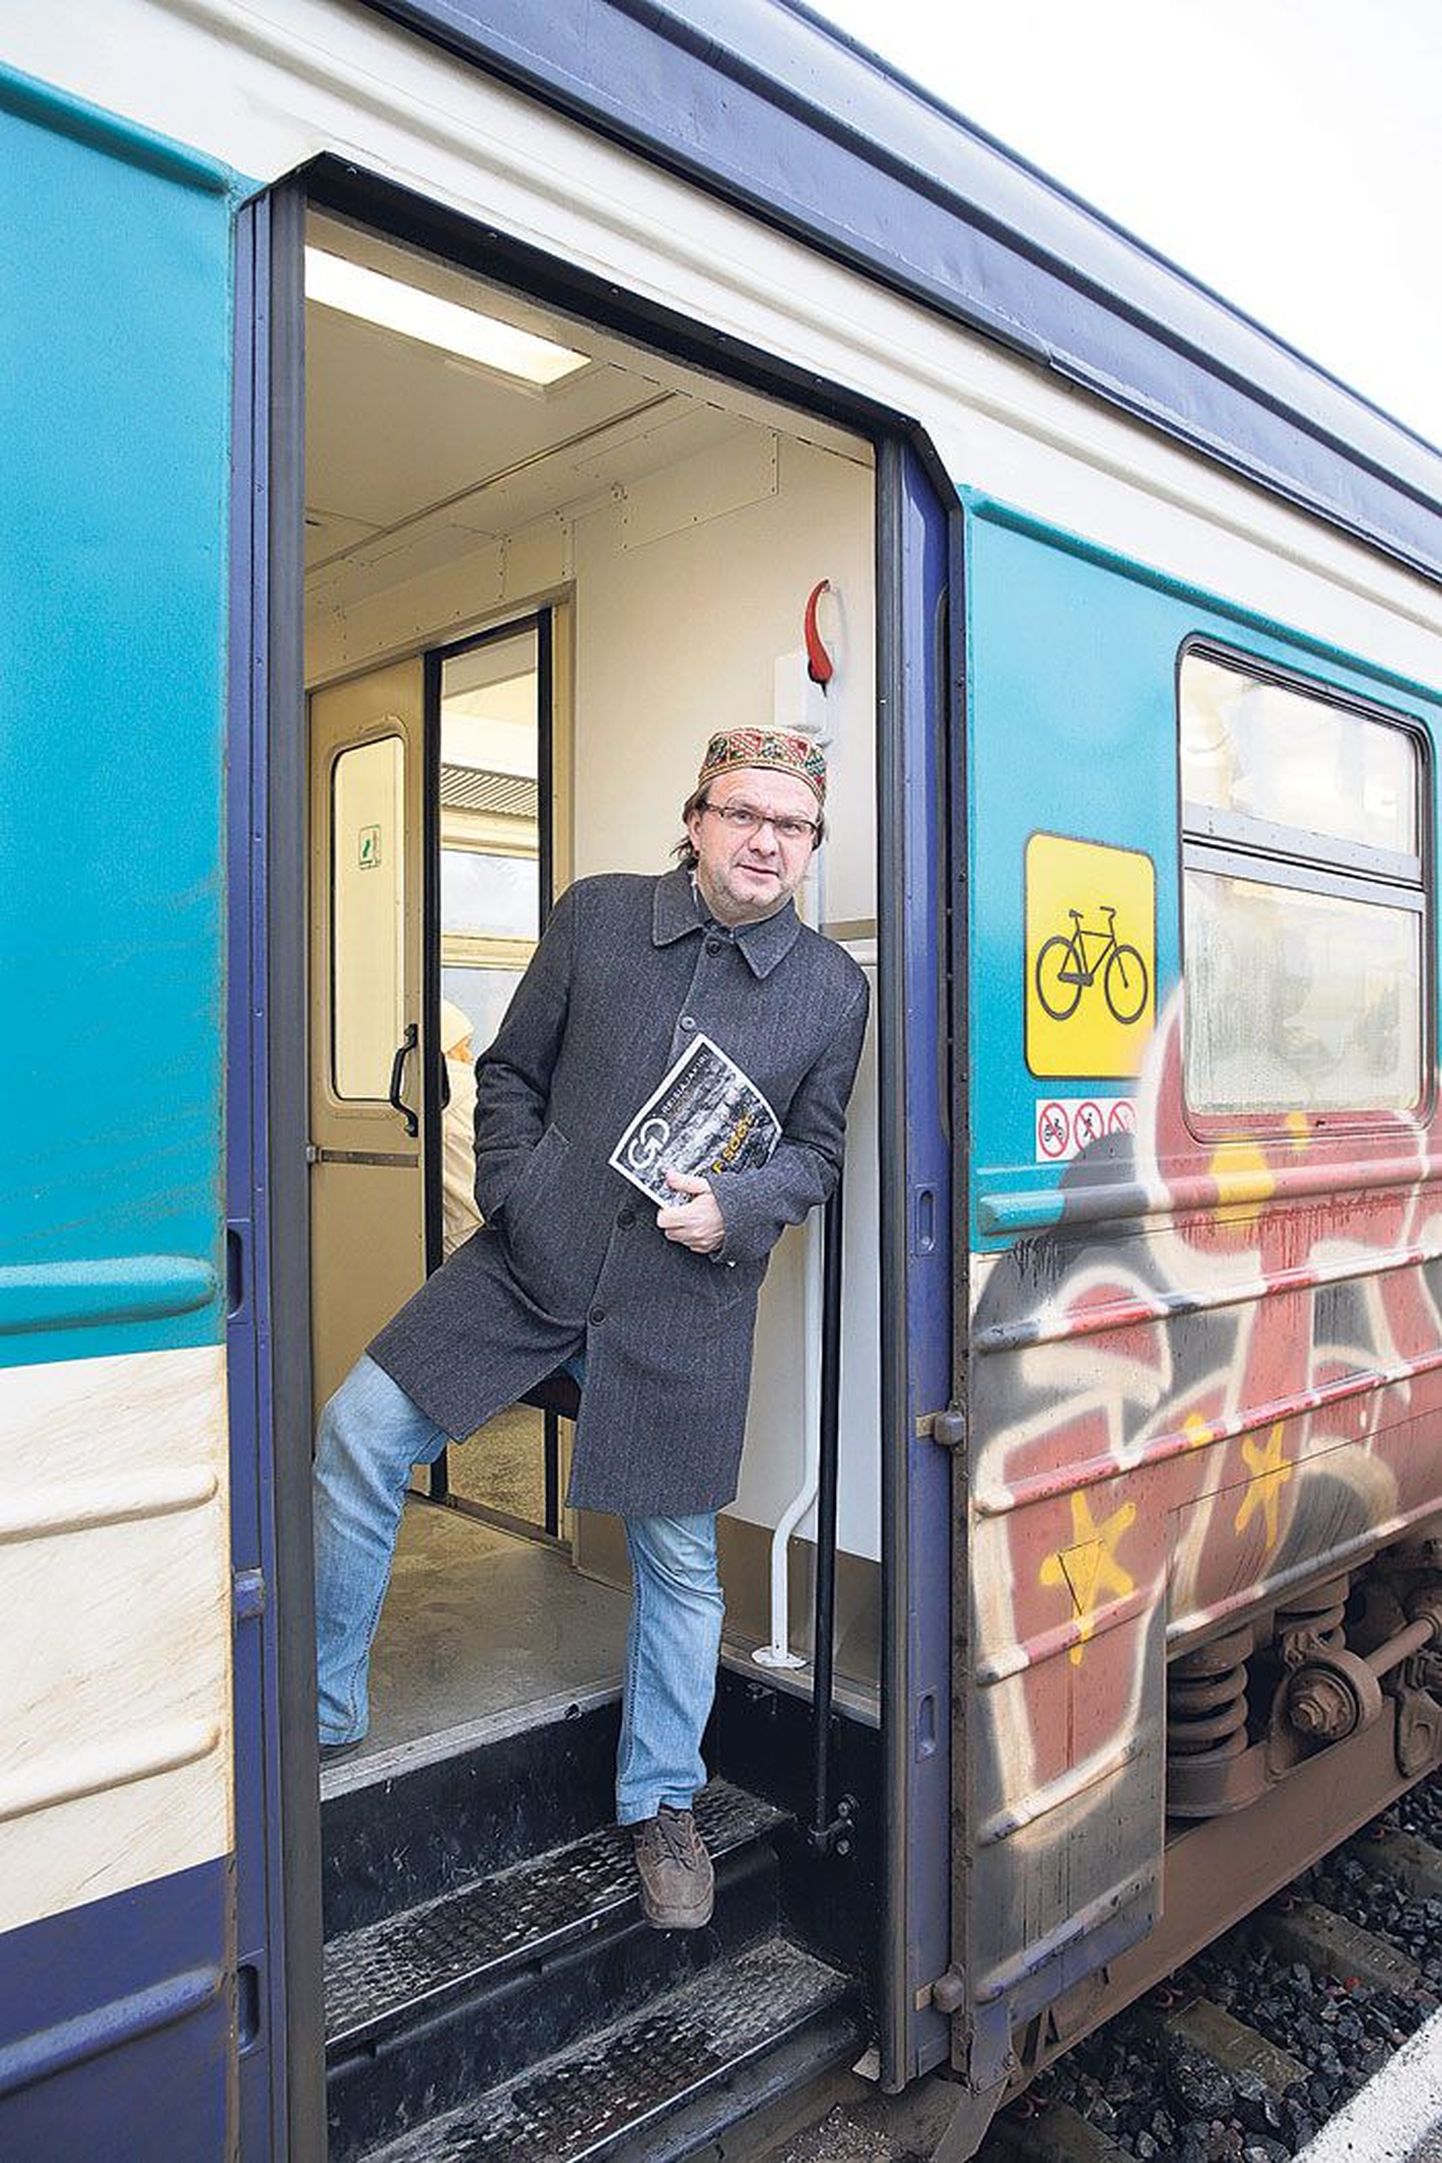 Rahvusvahelist reisijatevedu korraldava Go Raili ja aastavahetuseni Eestis reisijatevedu korraldanud Edelaraudtee nõukogu liige Tiit Pruuli (48) istus rongi, kaasas Go reisiajakiri. Seda annab ta koos sõpradega välja 2005. aasta talvest.